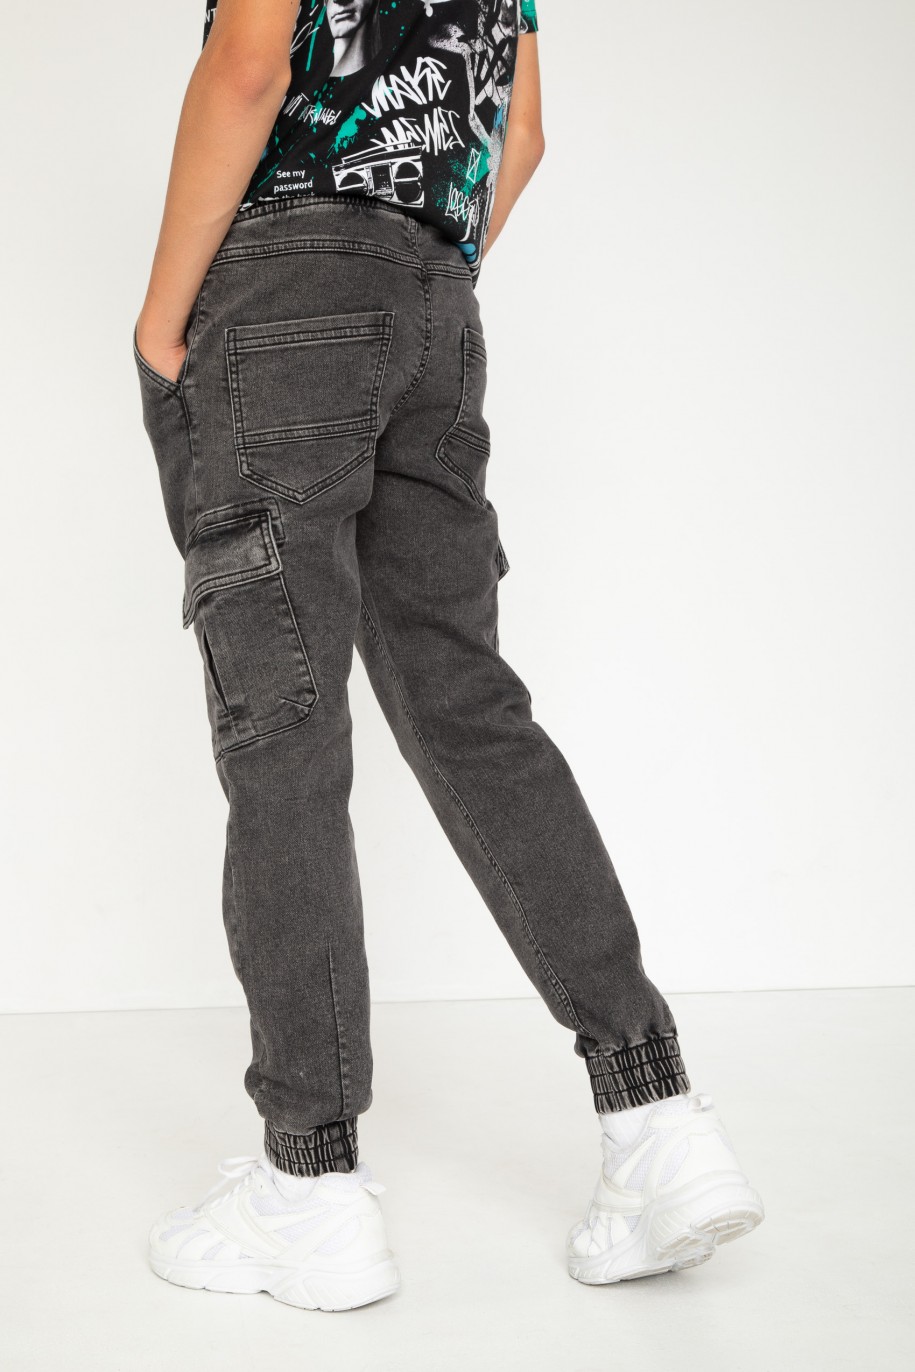 Szare jeansowe spodnie jogger - 44189